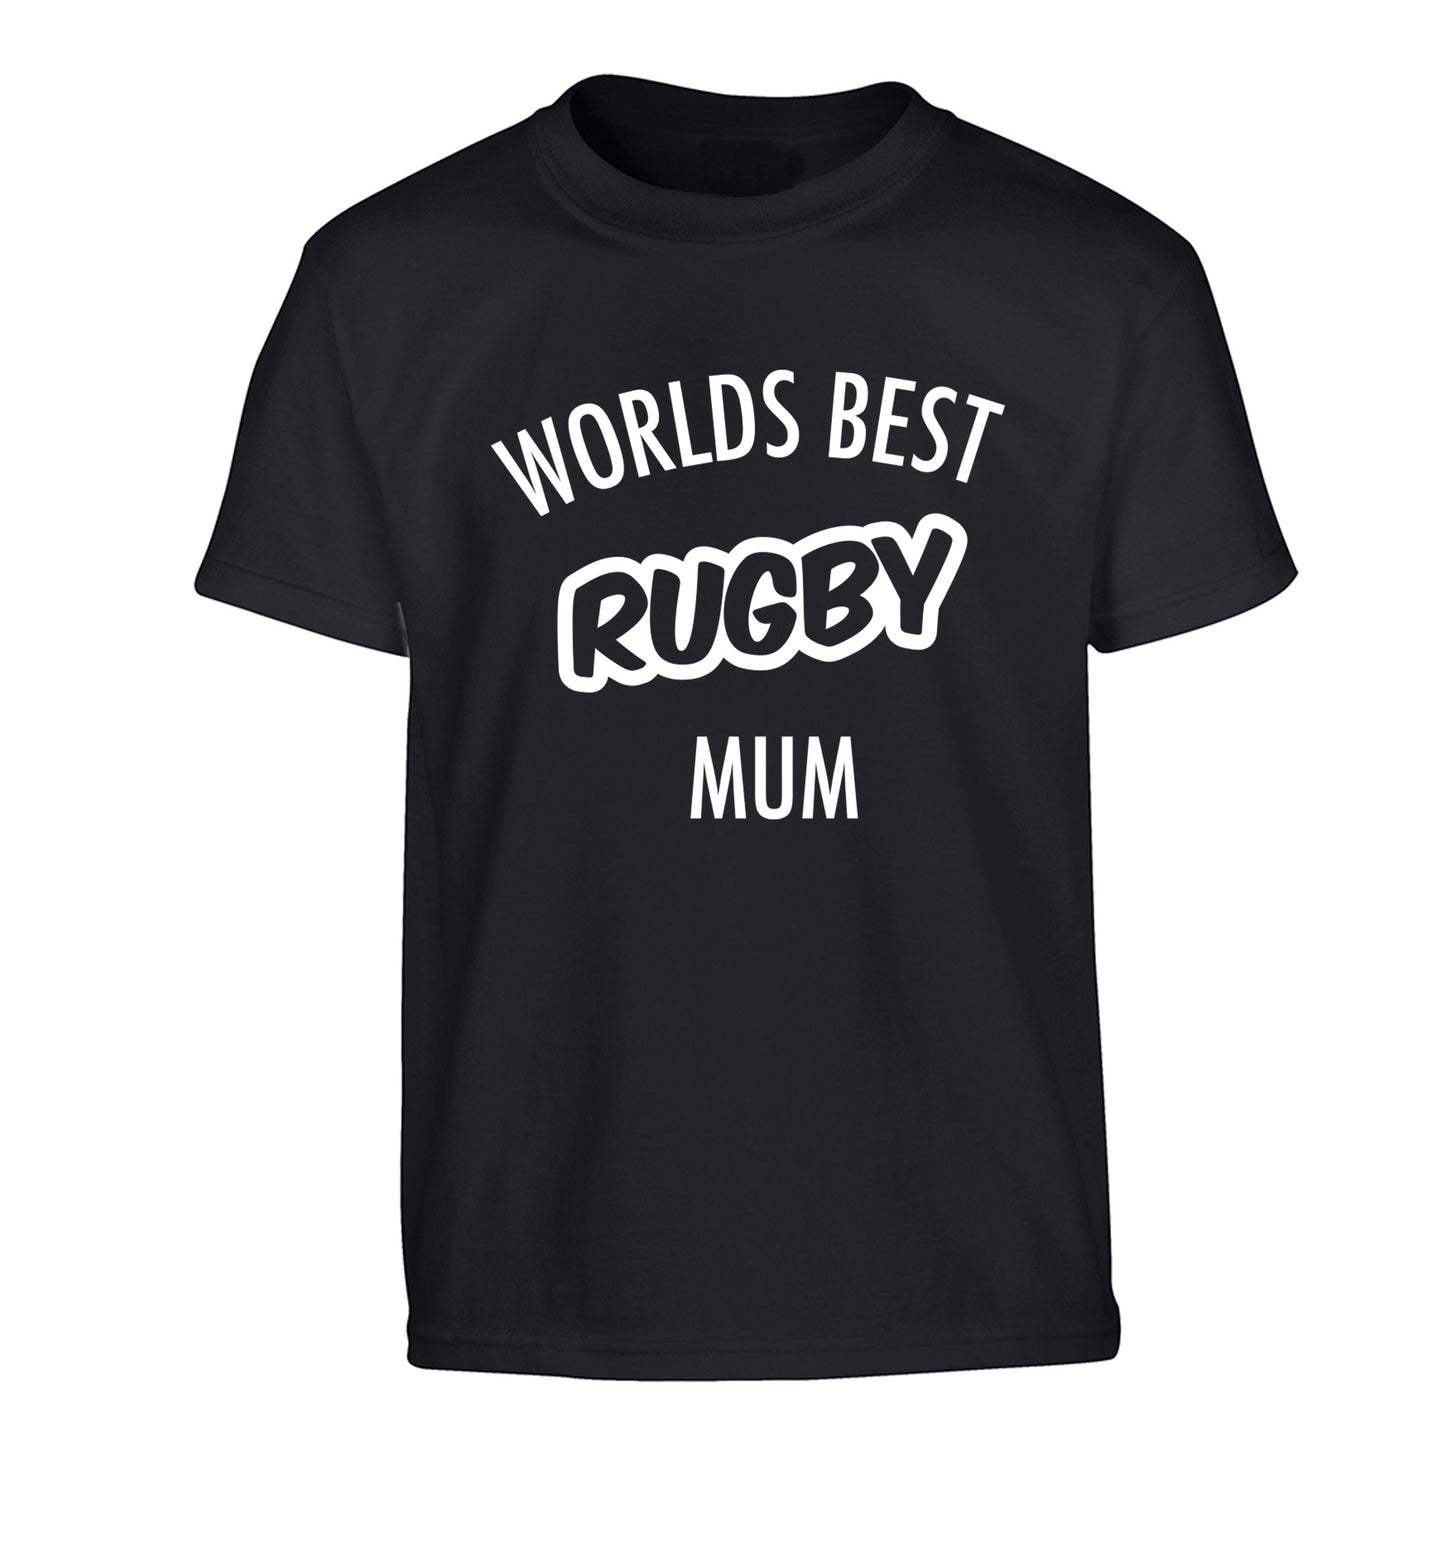 Worlds best rugby mum Children's black Tshirt 12-13 Years